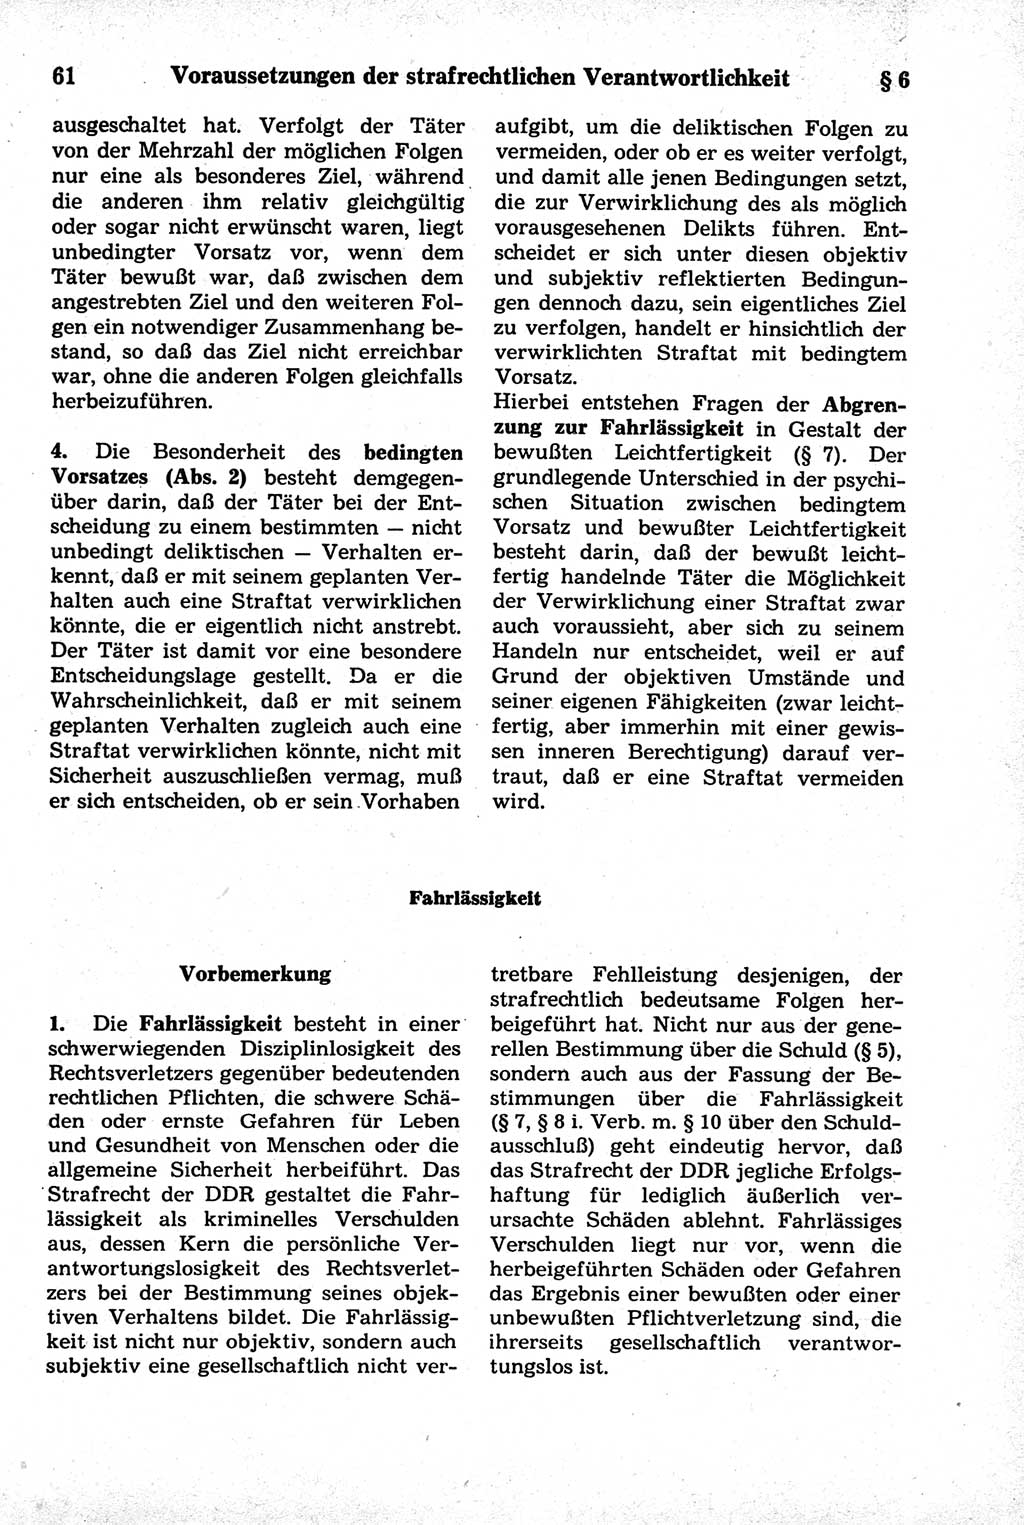 Strafrecht der Deutschen Demokratischen Republik (DDR), Kommentar zum Strafgesetzbuch (StGB) 1981, Seite 61 (Strafr. DDR Komm. StGB 1981, S. 61)